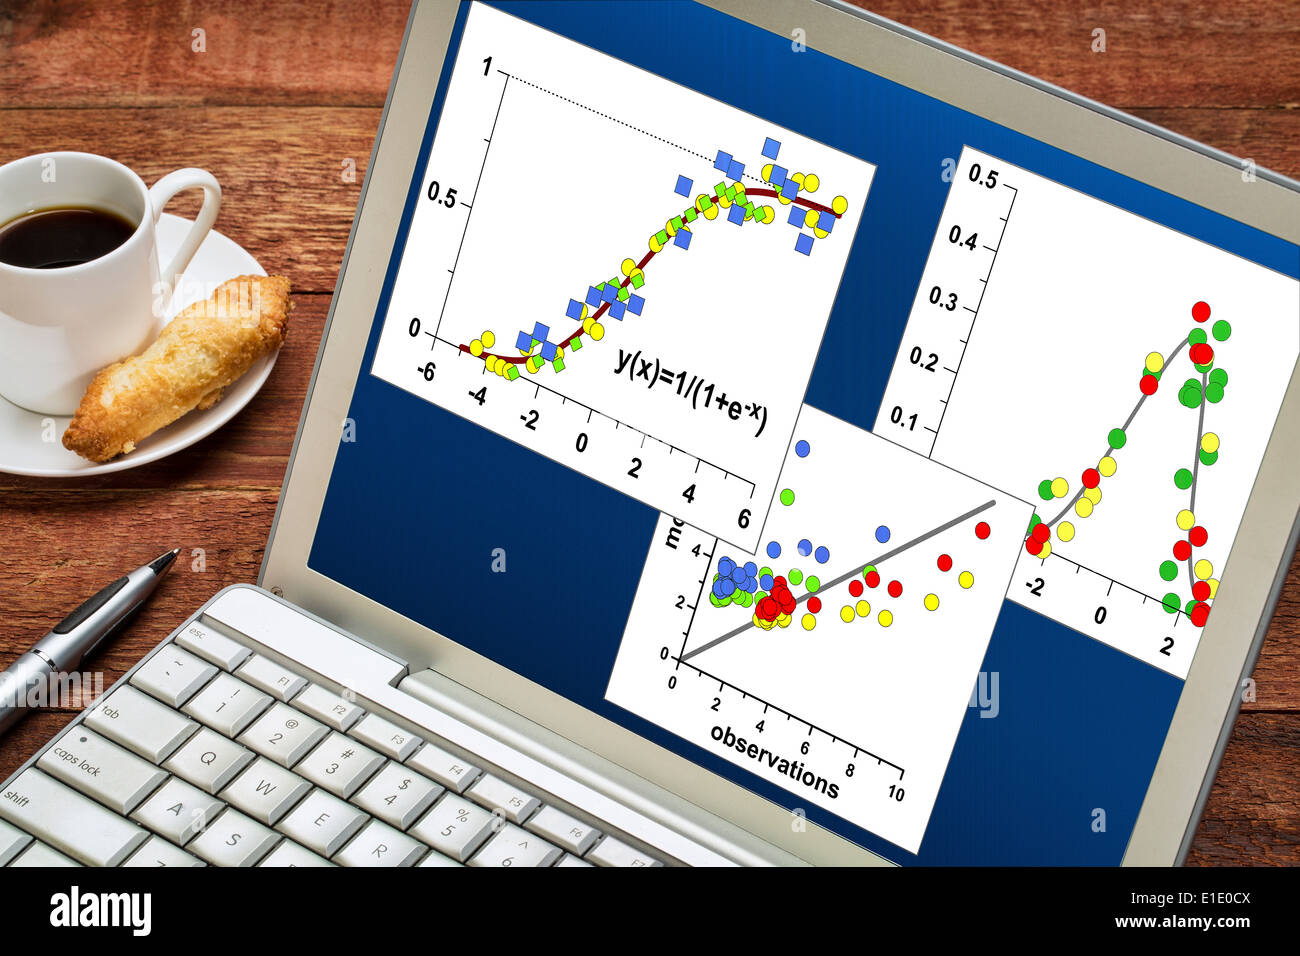 Rivedere e analizzare i dati scientifici grafici sul computer portatile con una tazza di caffè Foto Stock